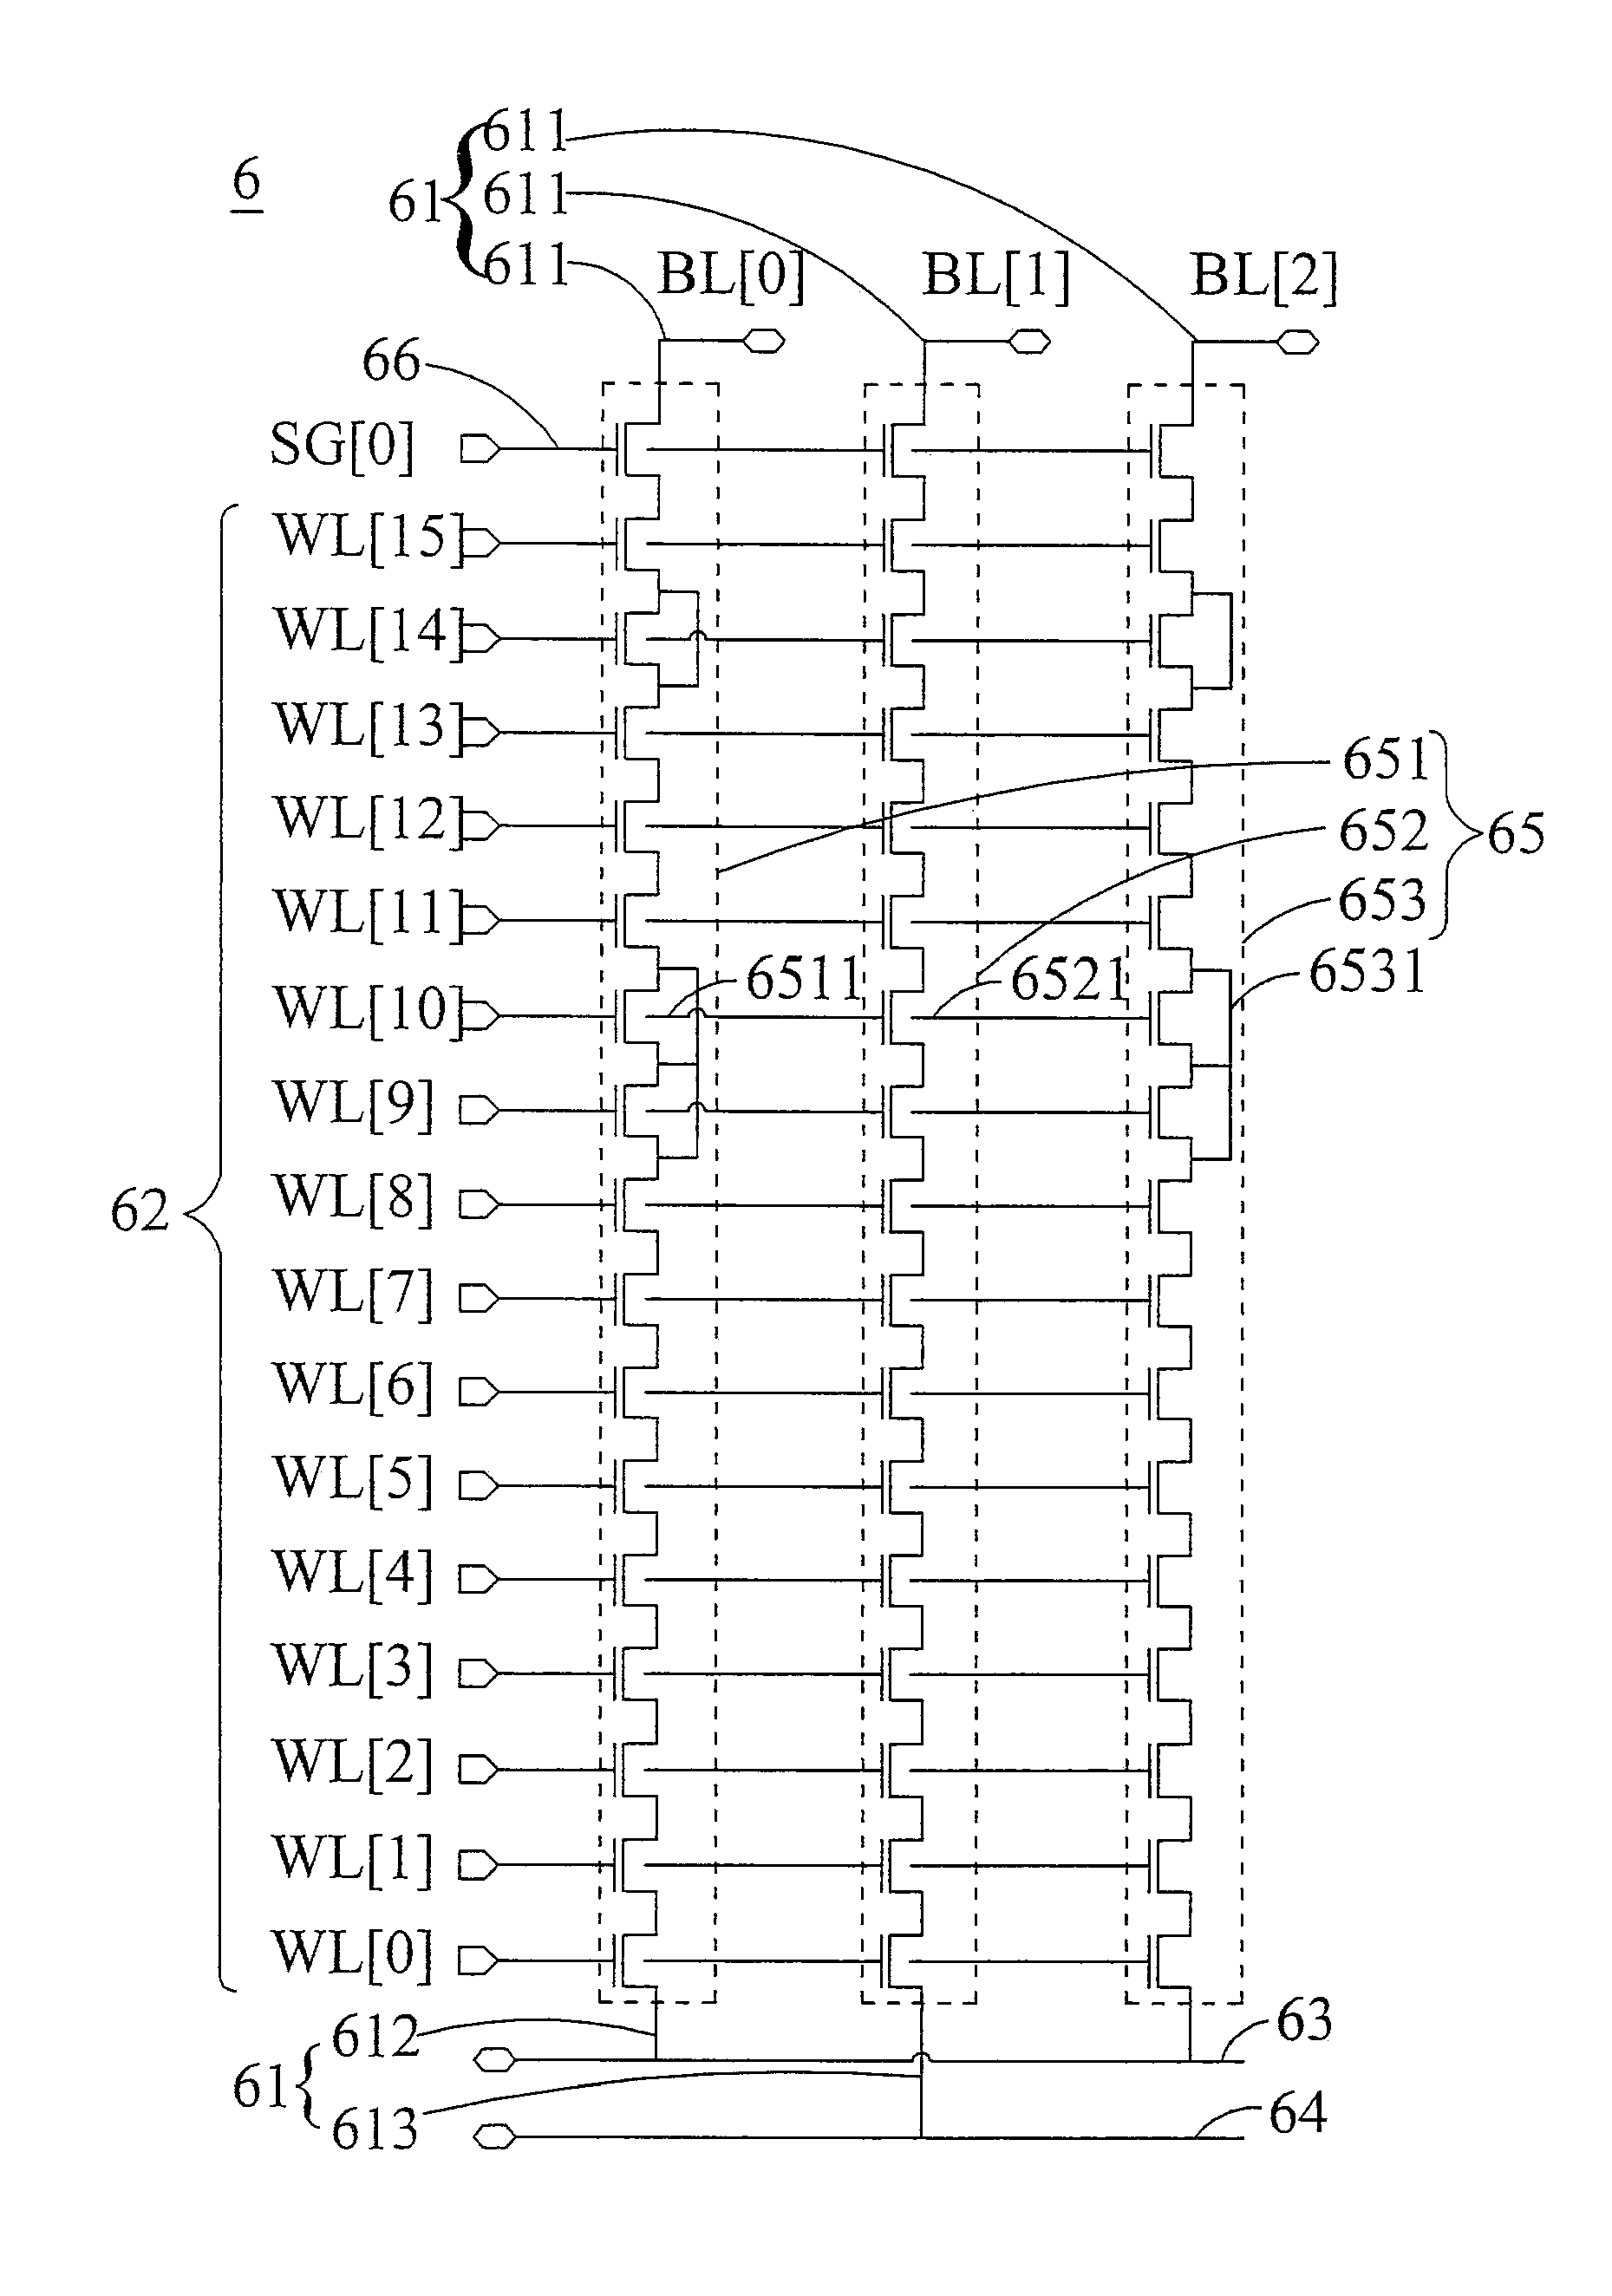 NAND type ROM